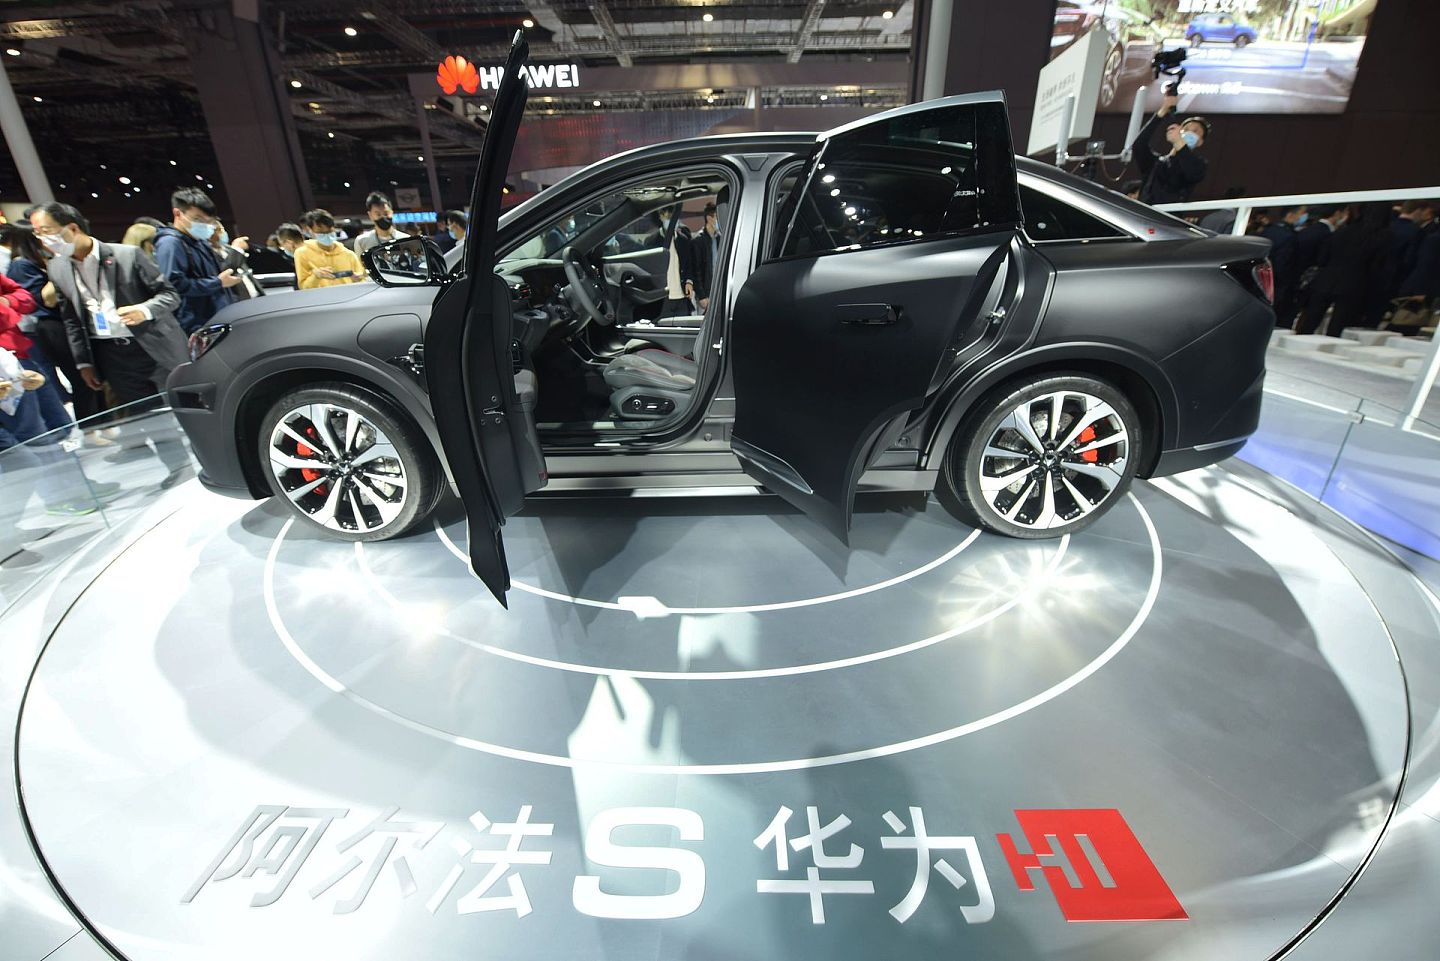 2021年上海车展上展出 搭载华为自动驾驶解决方案的北汽极狐阿尔法S电动车HI版。因为该车采用全套华为解决方案，因而被赋予了“HI”的标志，即Huawei Inside，也正因为搭载华为自动驾驶系统HI版比普通版贵10万人民币。（视觉中国）